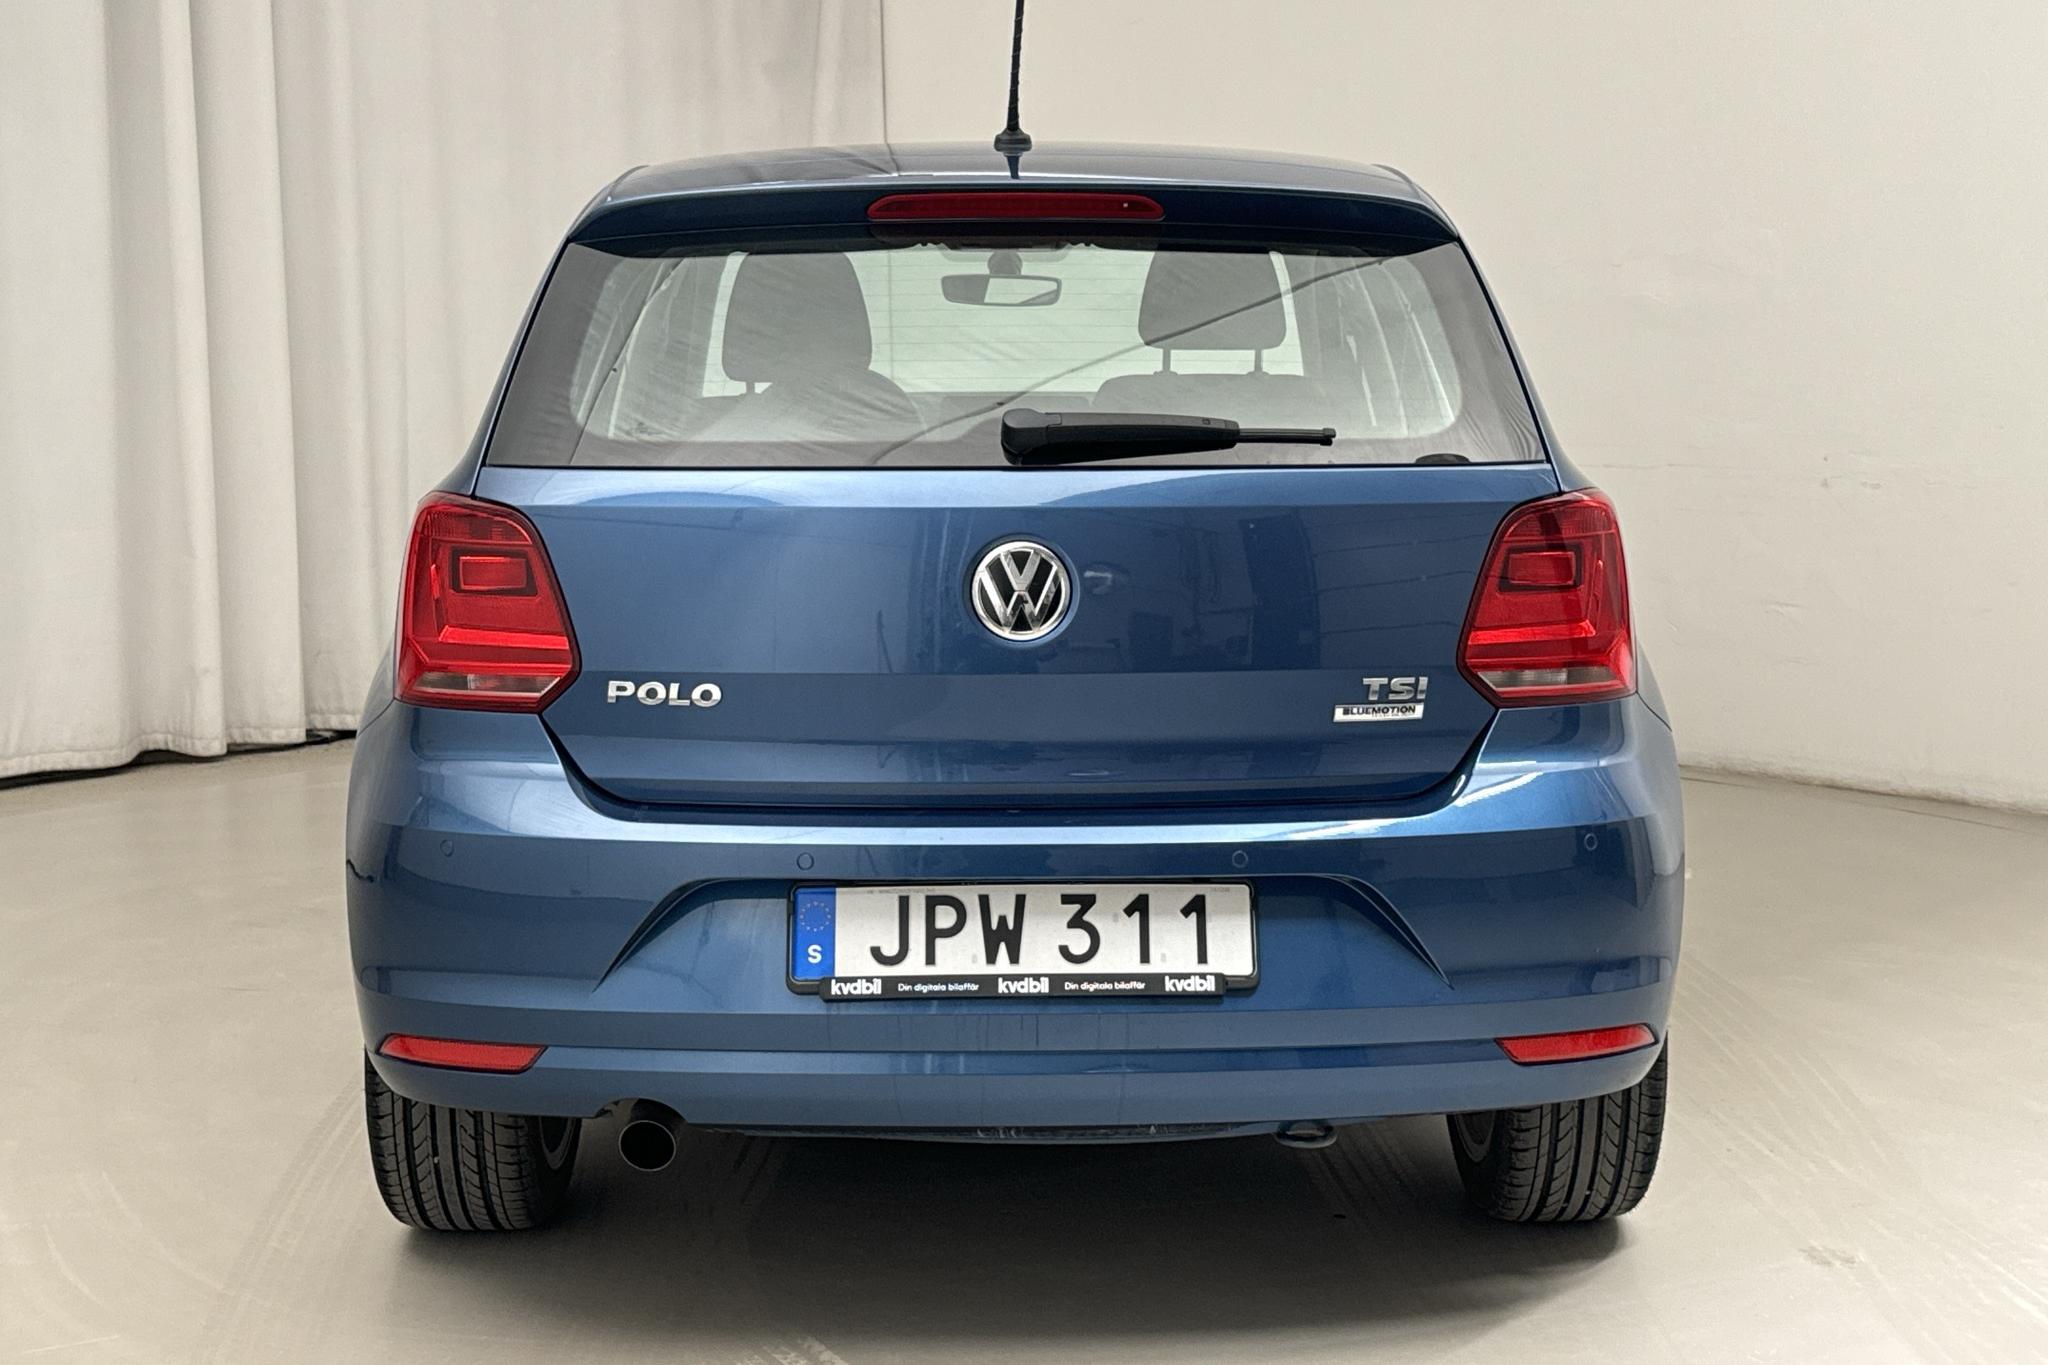 VW Polo 1.2 TSI 5dr (90hk) - 105 440 km - Manual - blue - 2015